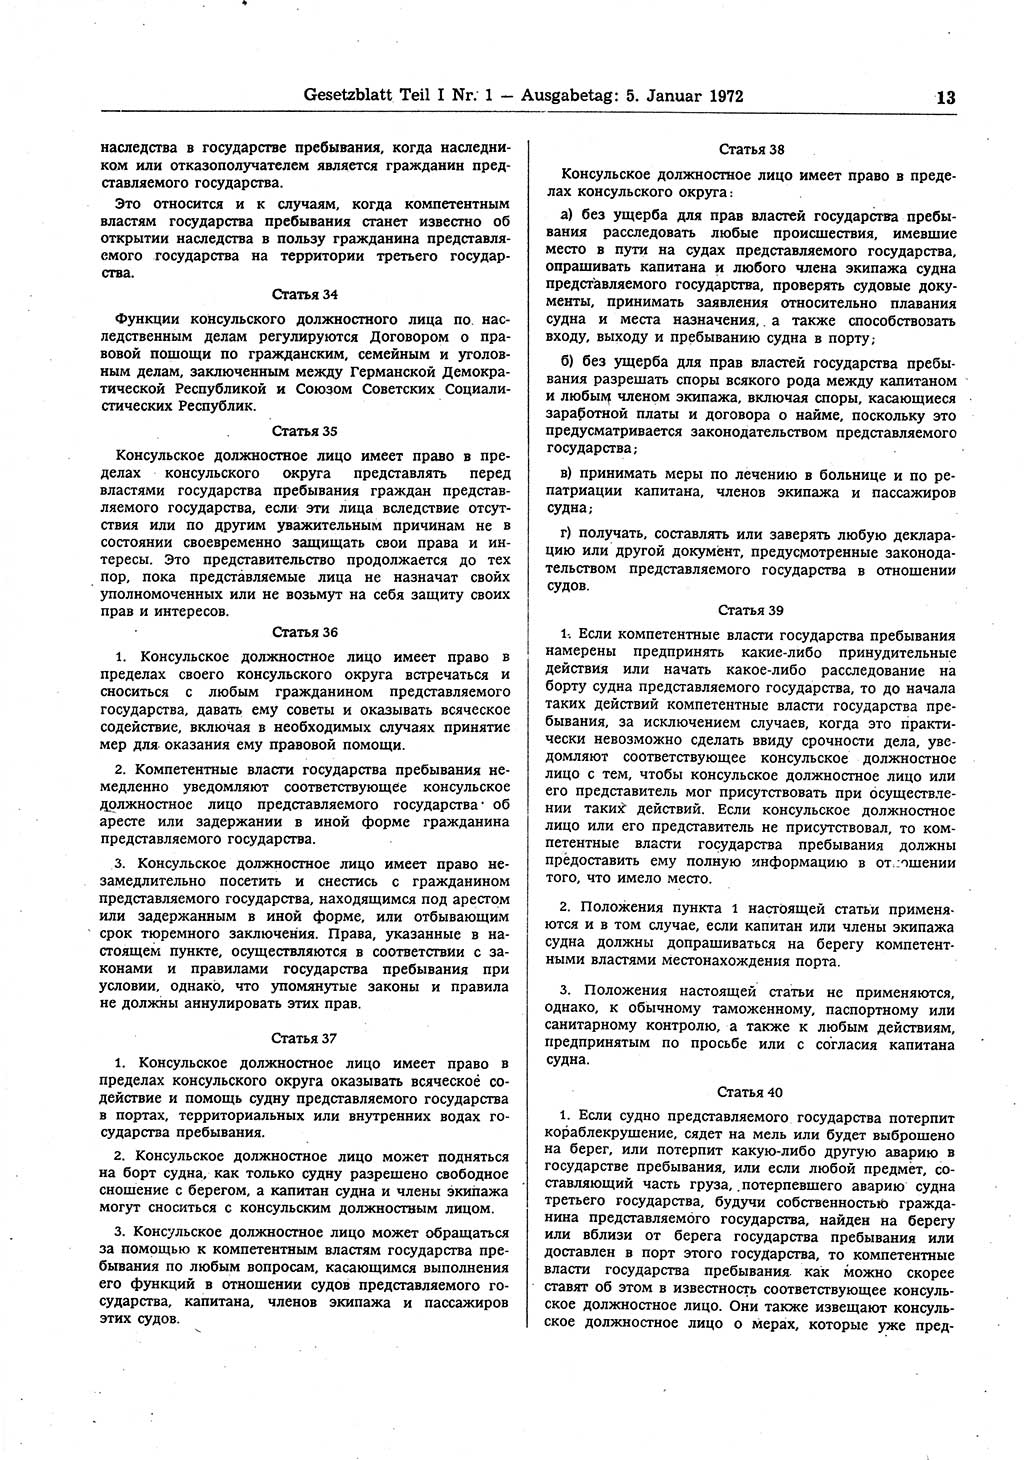 Gesetzblatt (GBl.) der Deutschen Demokratischen Republik (DDR) Teil Ⅰ 1972, Seite 13 (GBl. DDR Ⅰ 1972, S. 13)